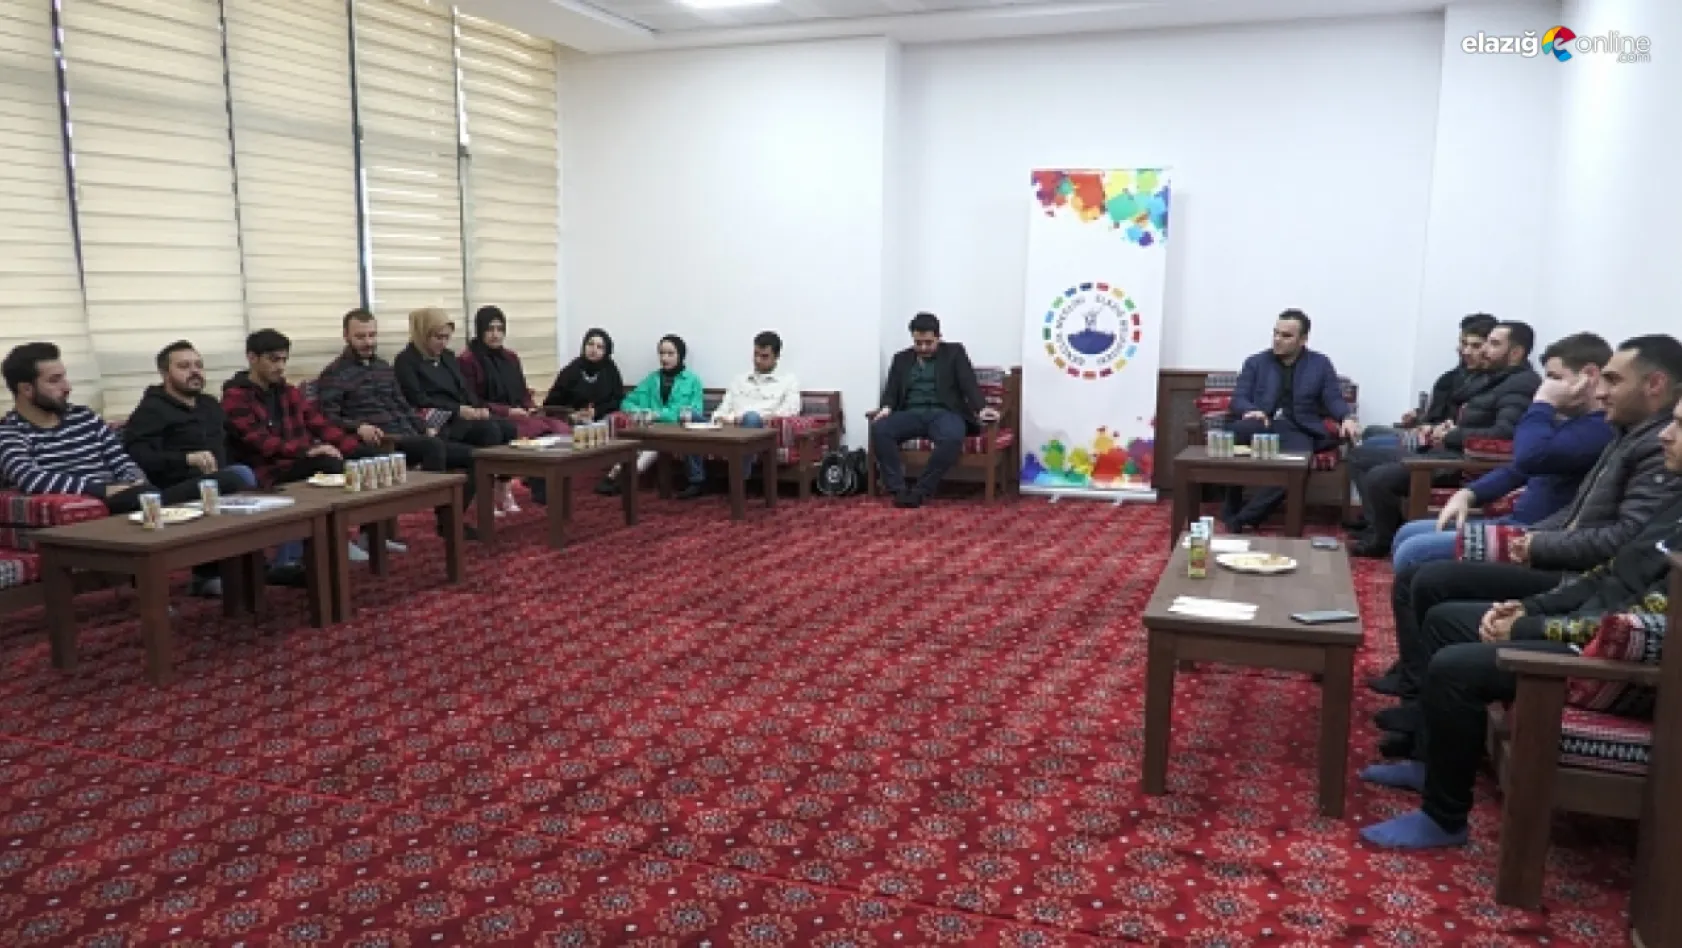 Elazığ Belediyesi Gençlik Meclisi'nden tanışma programı